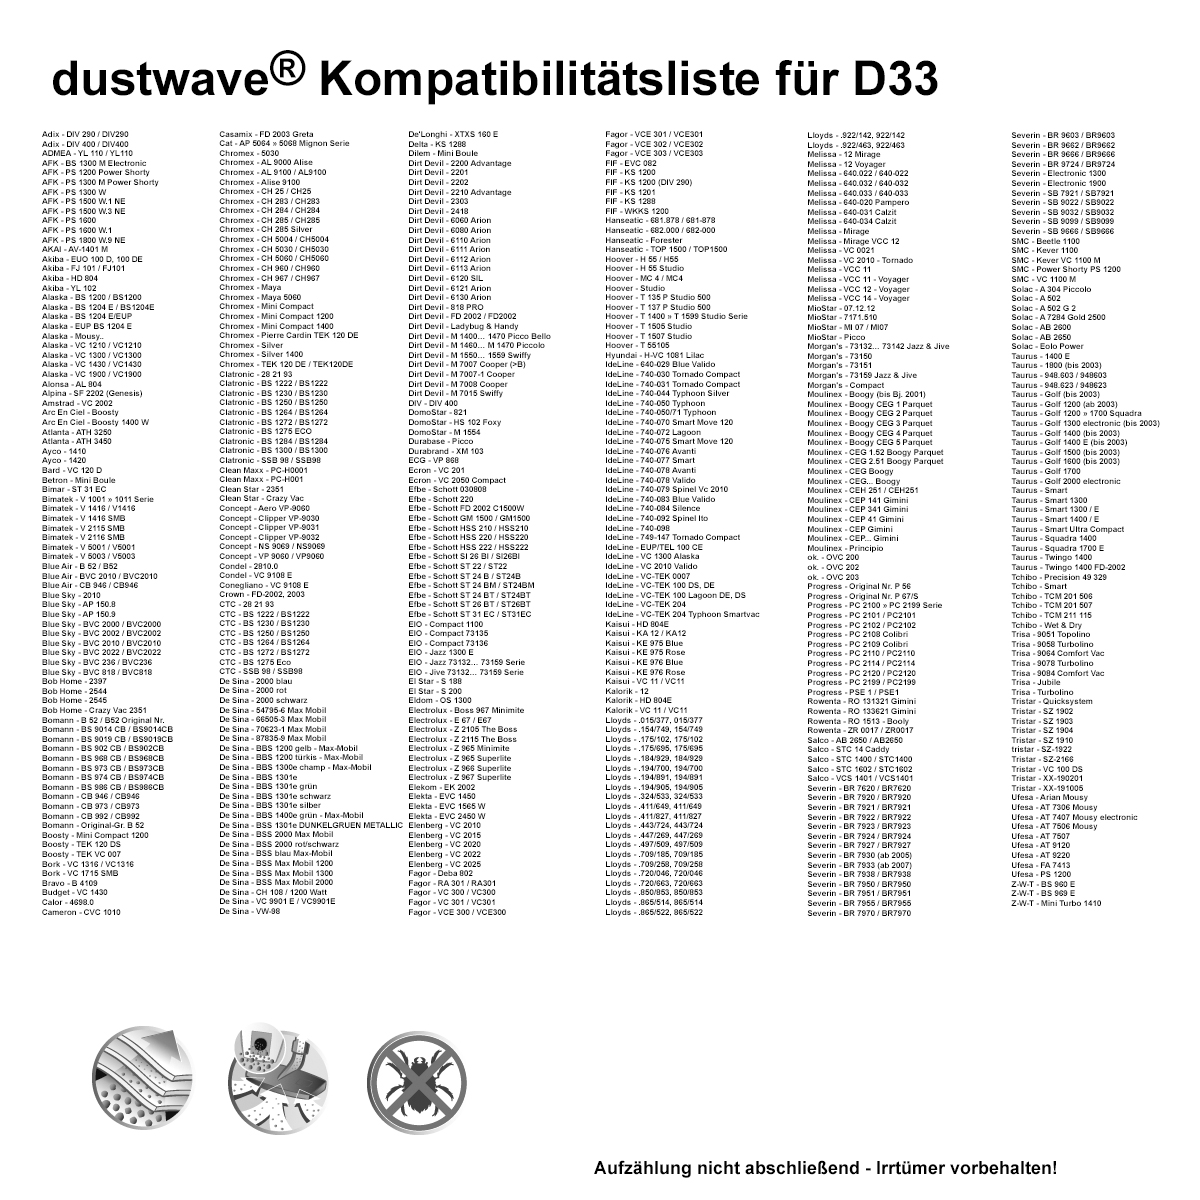 Dustwave® 1 Staubsaugerbeutel für Alaska VC 1210 / VC1210 - hocheffizient, mehrlagiges Mikrovlies mit Hygieneverschluss - Made in Germany